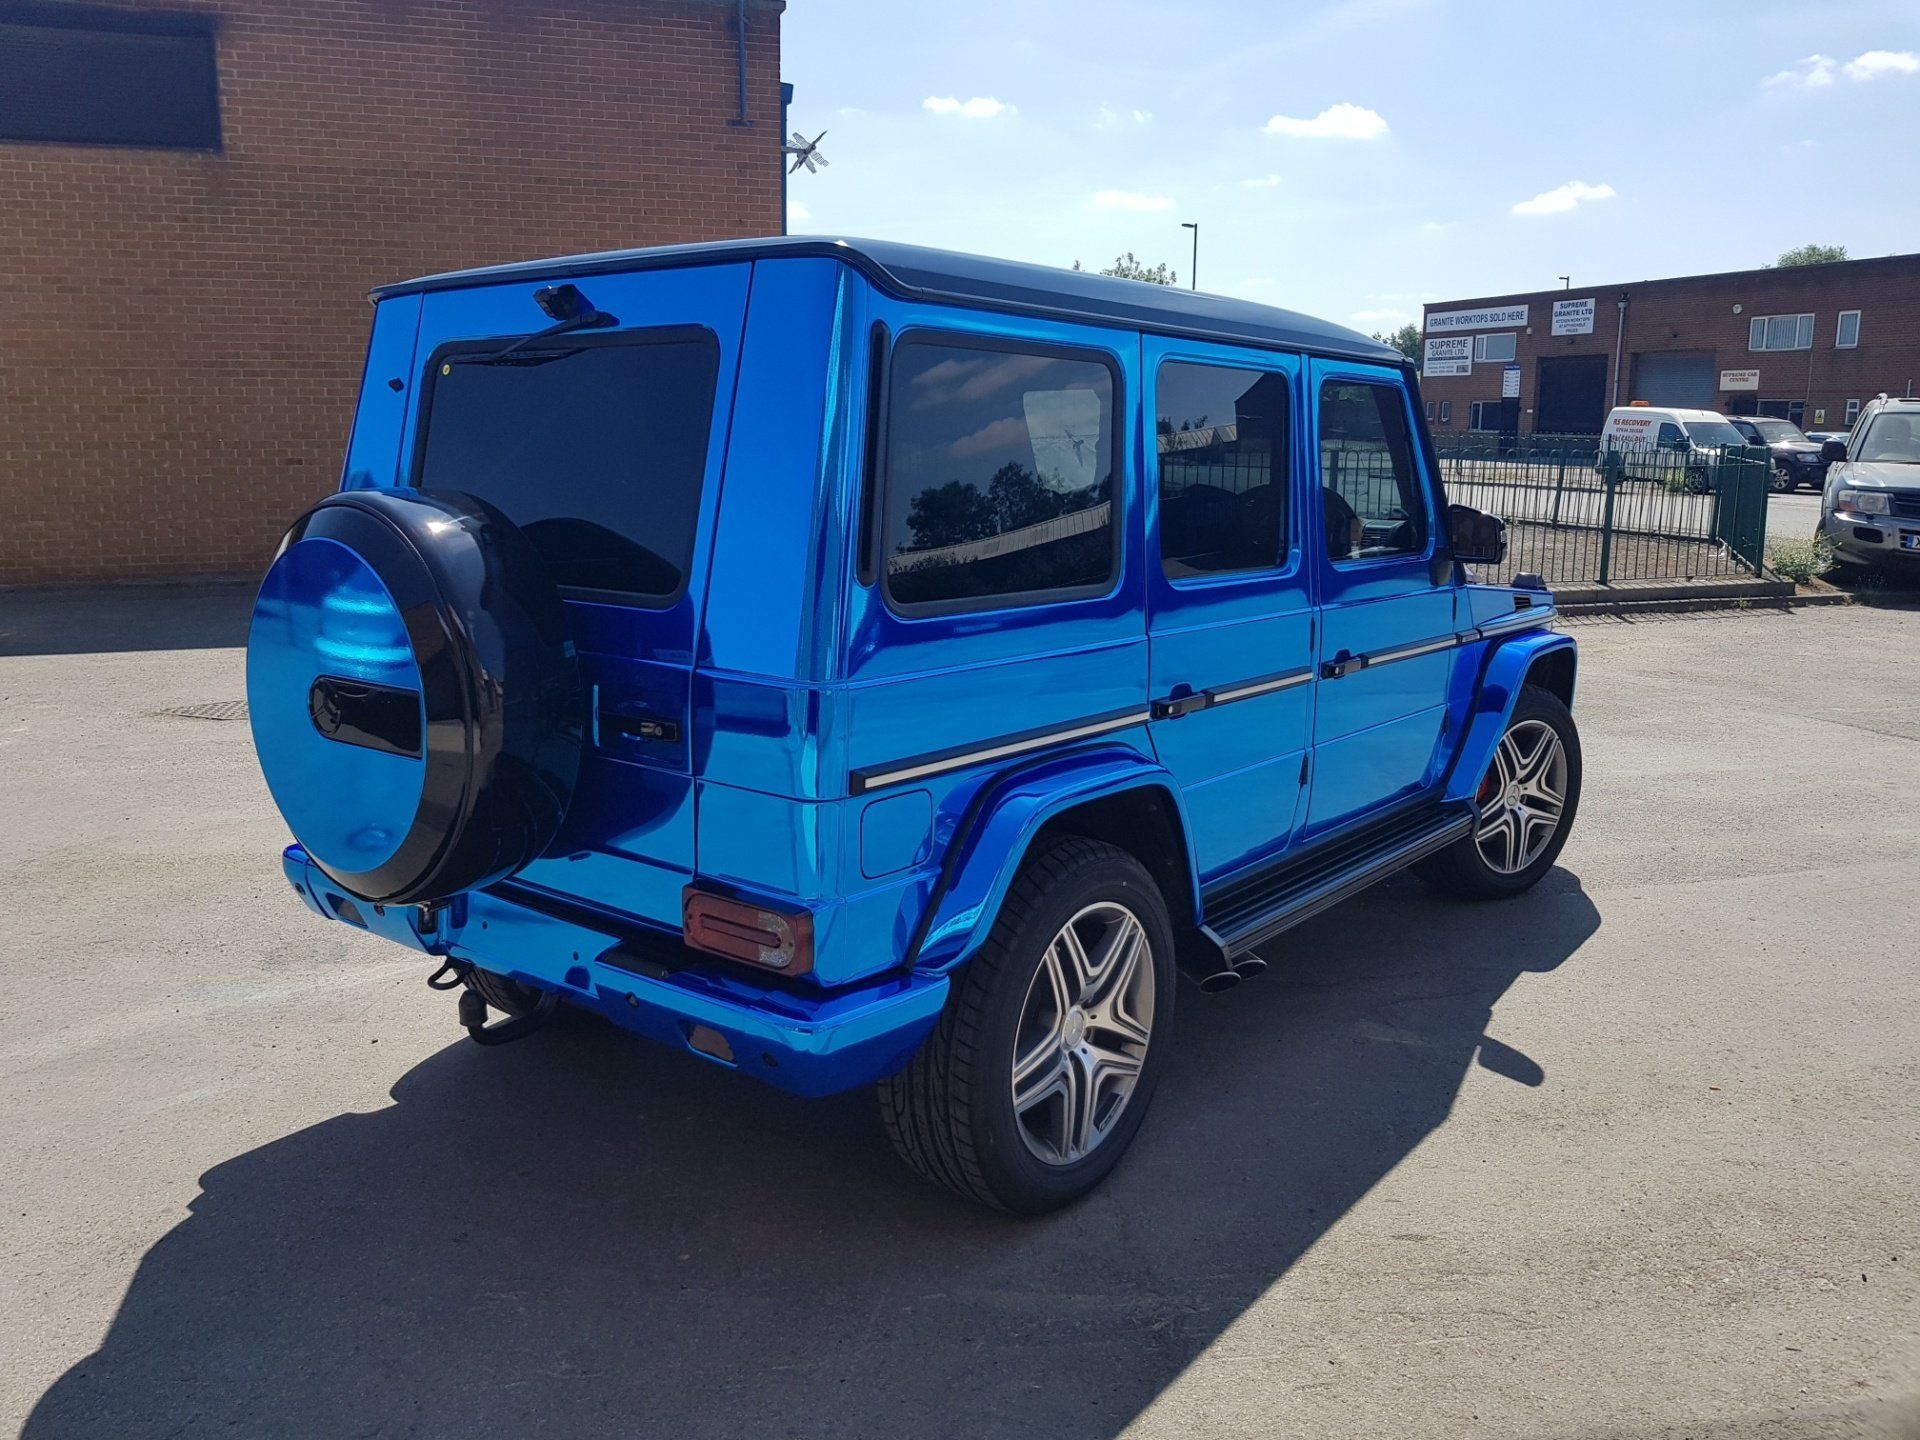 Blue vehicle